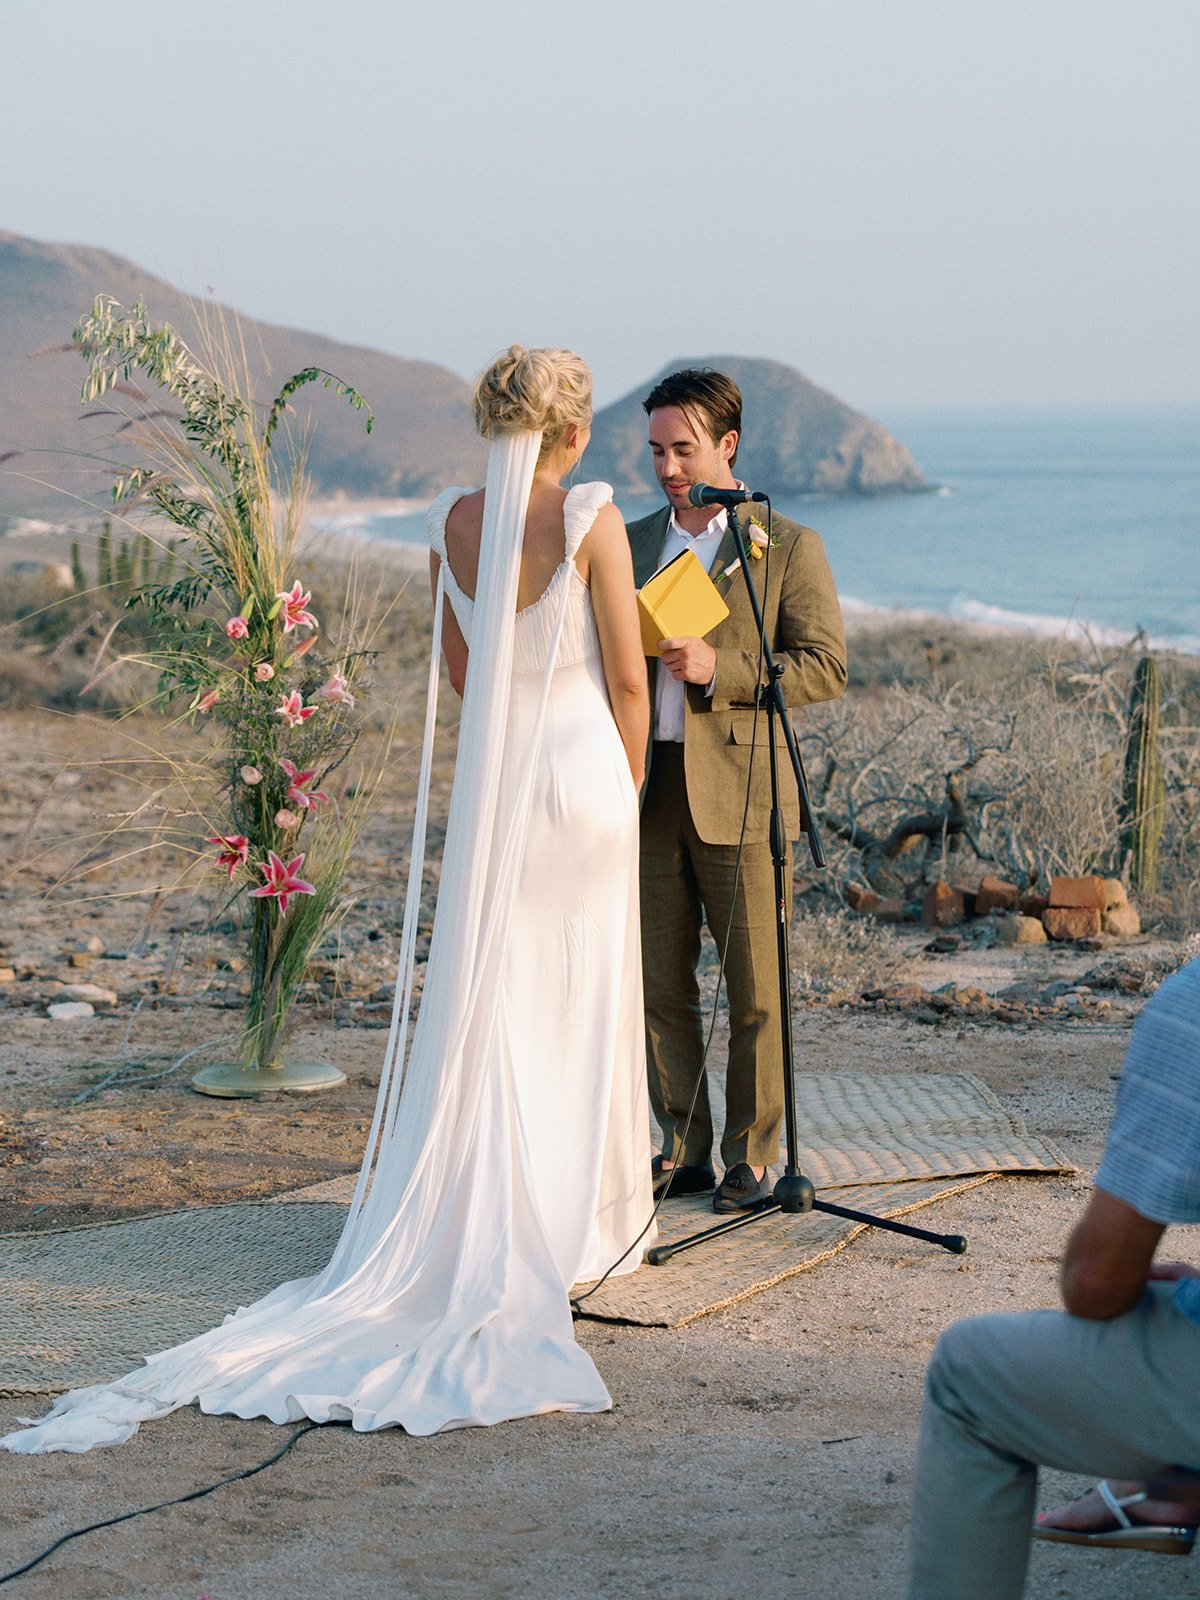 Best-Todos-Santos-Wedding-Photographer-Baja-El Mirador-La Bohemia-35mm-Film-Austin-Mexico-128.jpg